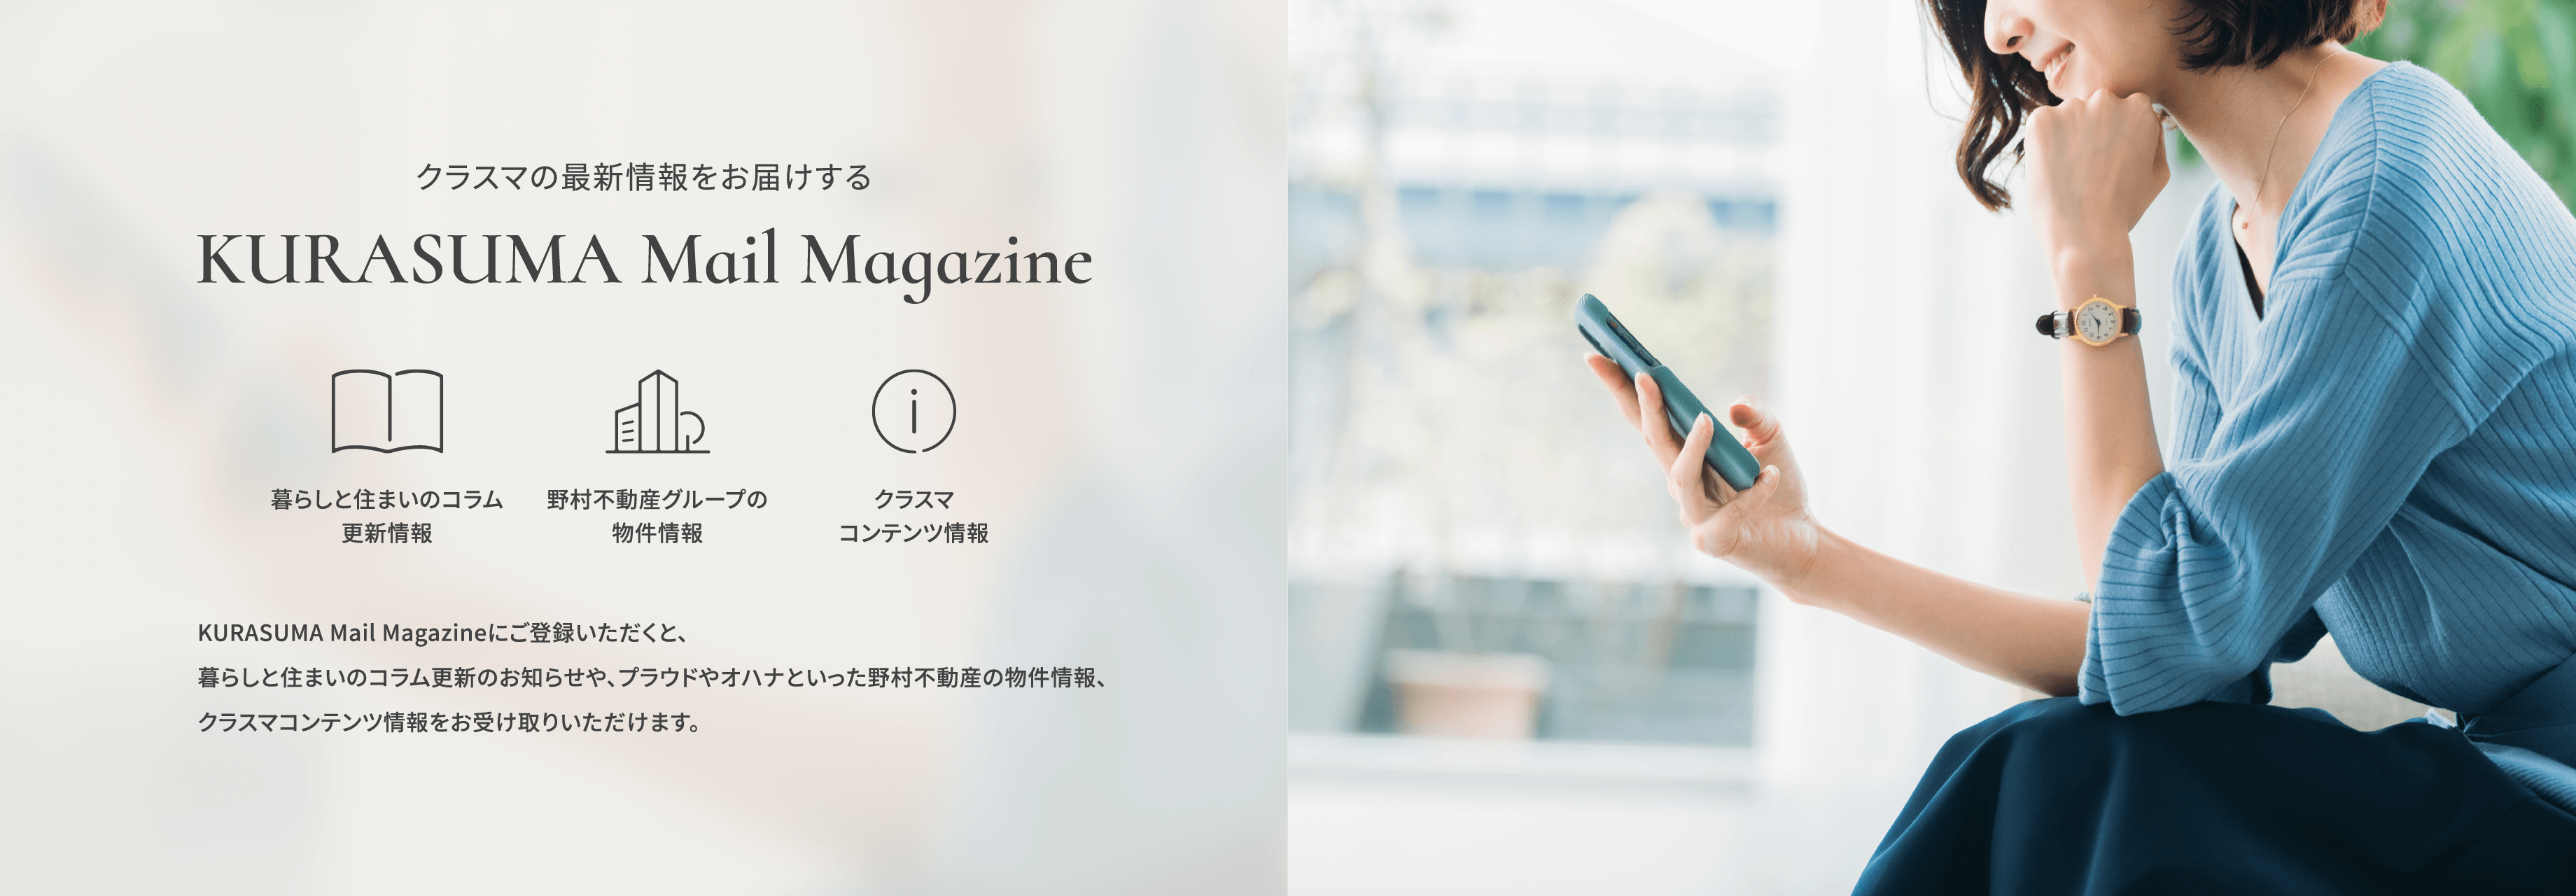 「野村のクラスマ」の最新情報をお届けする KURASUMA Mail Magazine